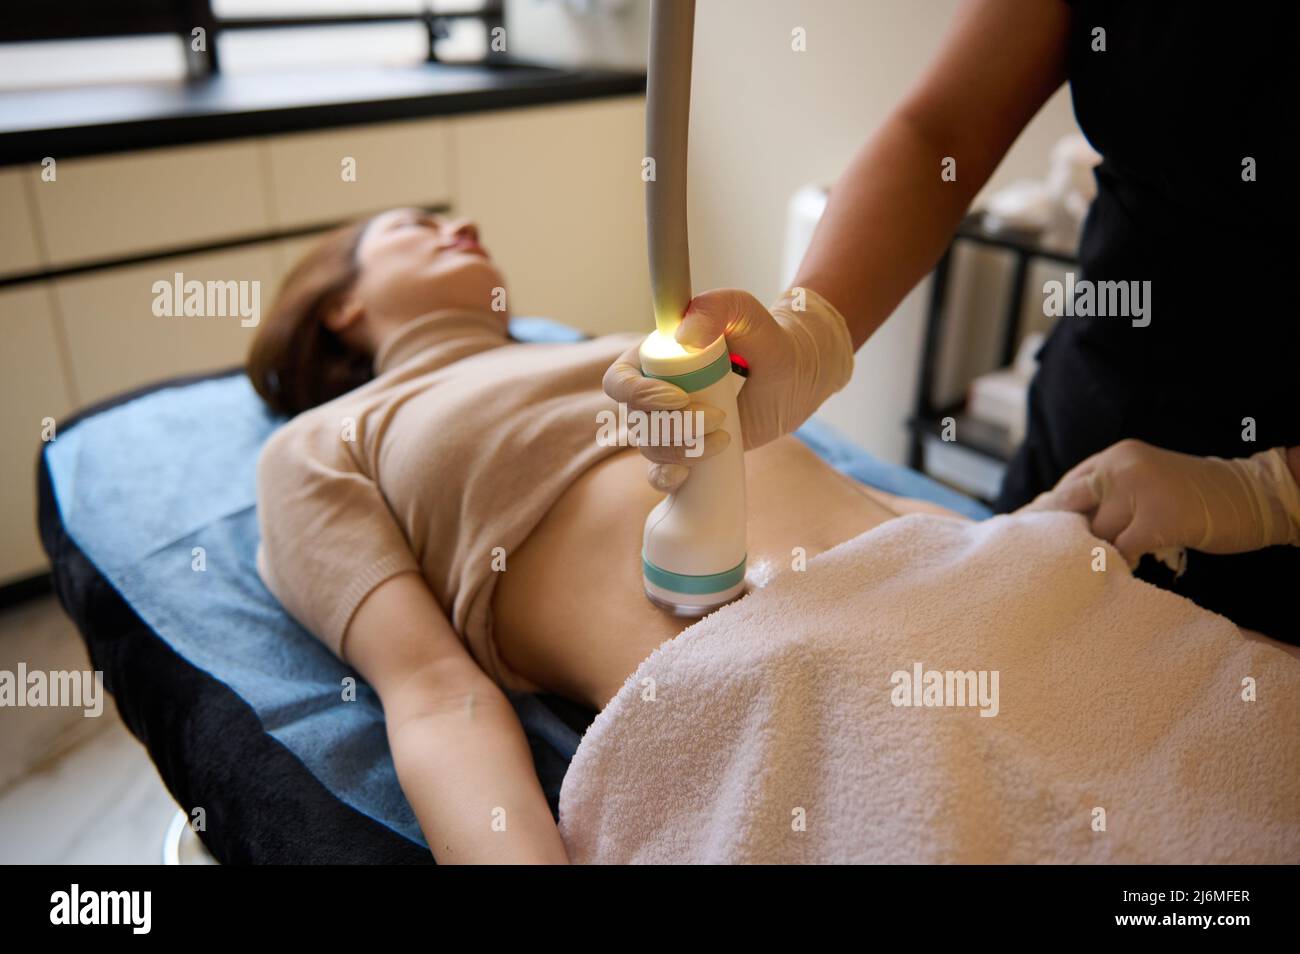 Schöne junge Frau auf einem Tagesbett erhalten Hardware-Spa-Verfahren für Cellulite-Reduktion und Gewichtsverlust in der medizinischen Klinik. Stockfoto